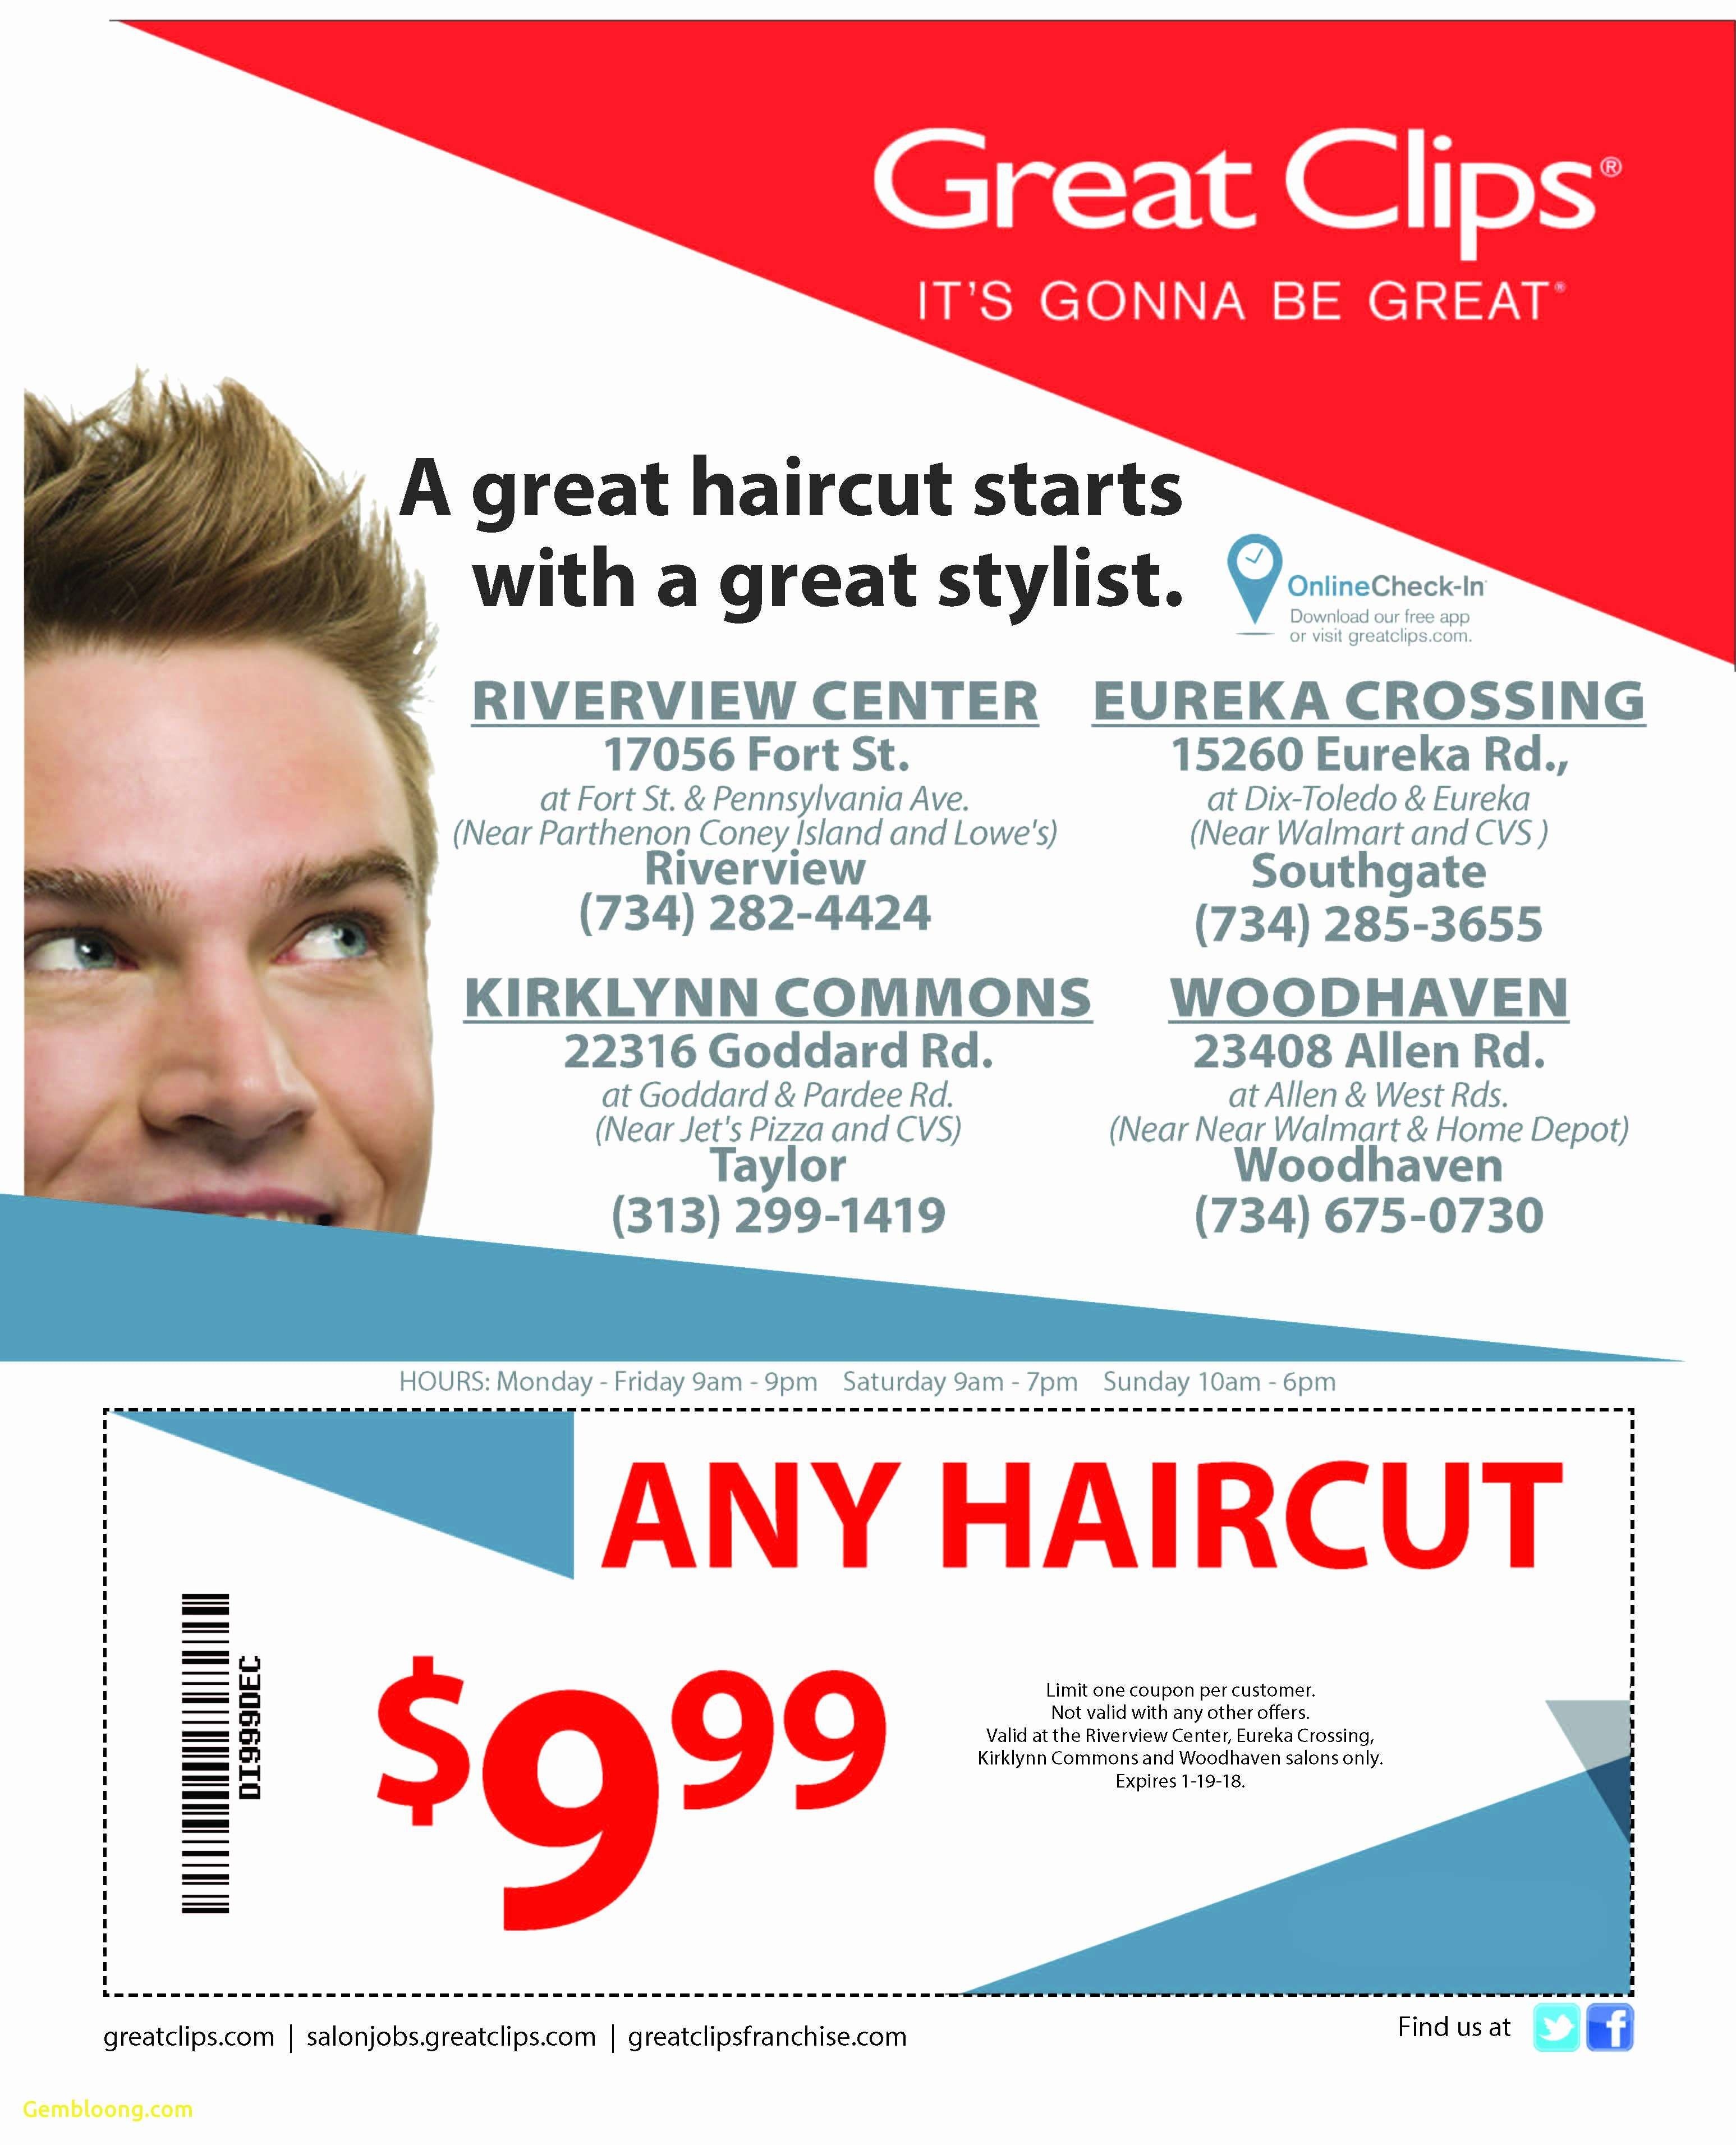 Sports Clips Free Haircut Printable Coupon - Free Printable